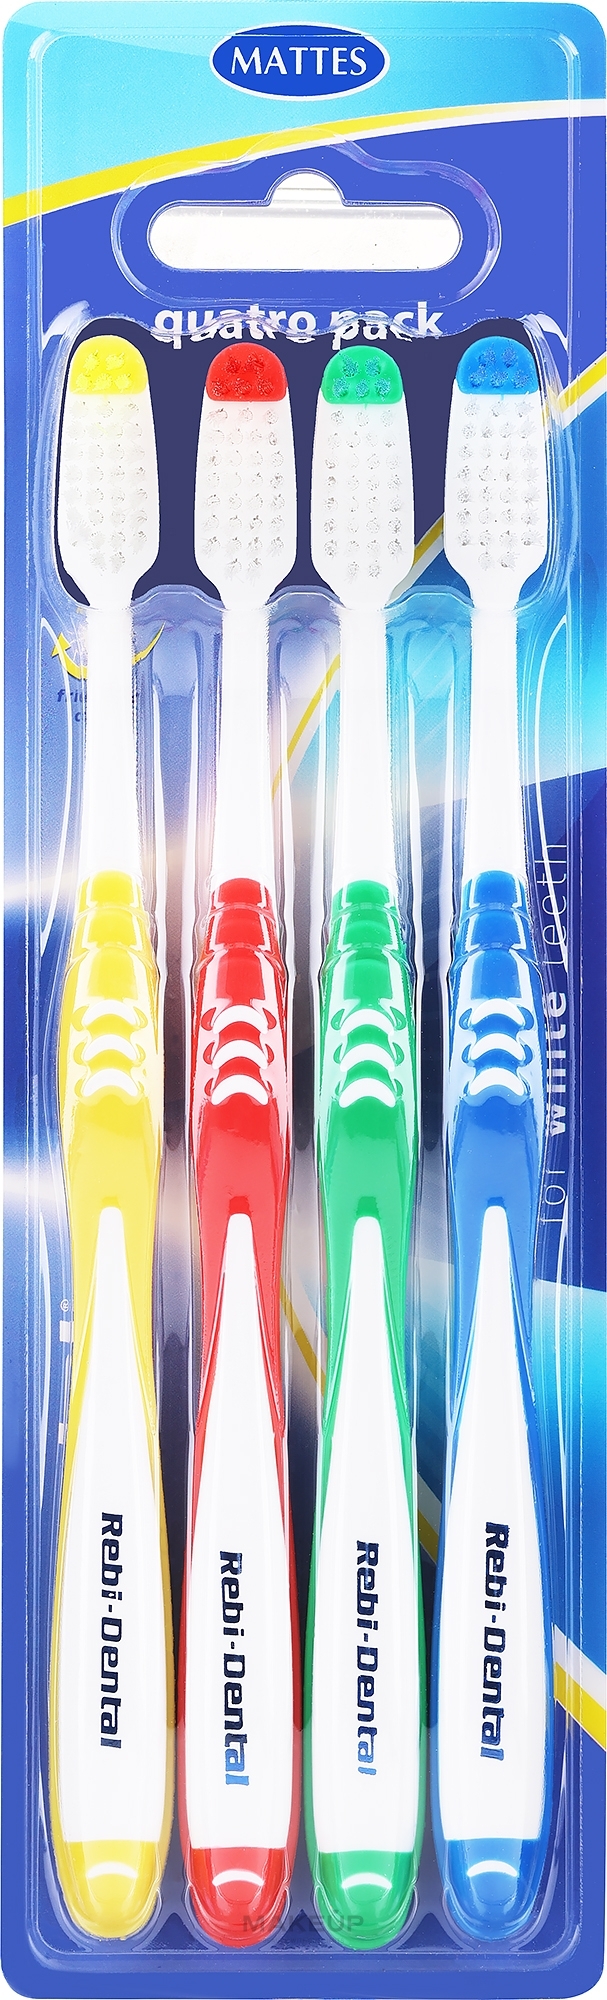 Zestaw szczoteczek do zębów Rebi-Dental M458, średnia twardość, czerwona+żółta+zielona+niebieska - Mattes — Zdjęcie 4 szt.